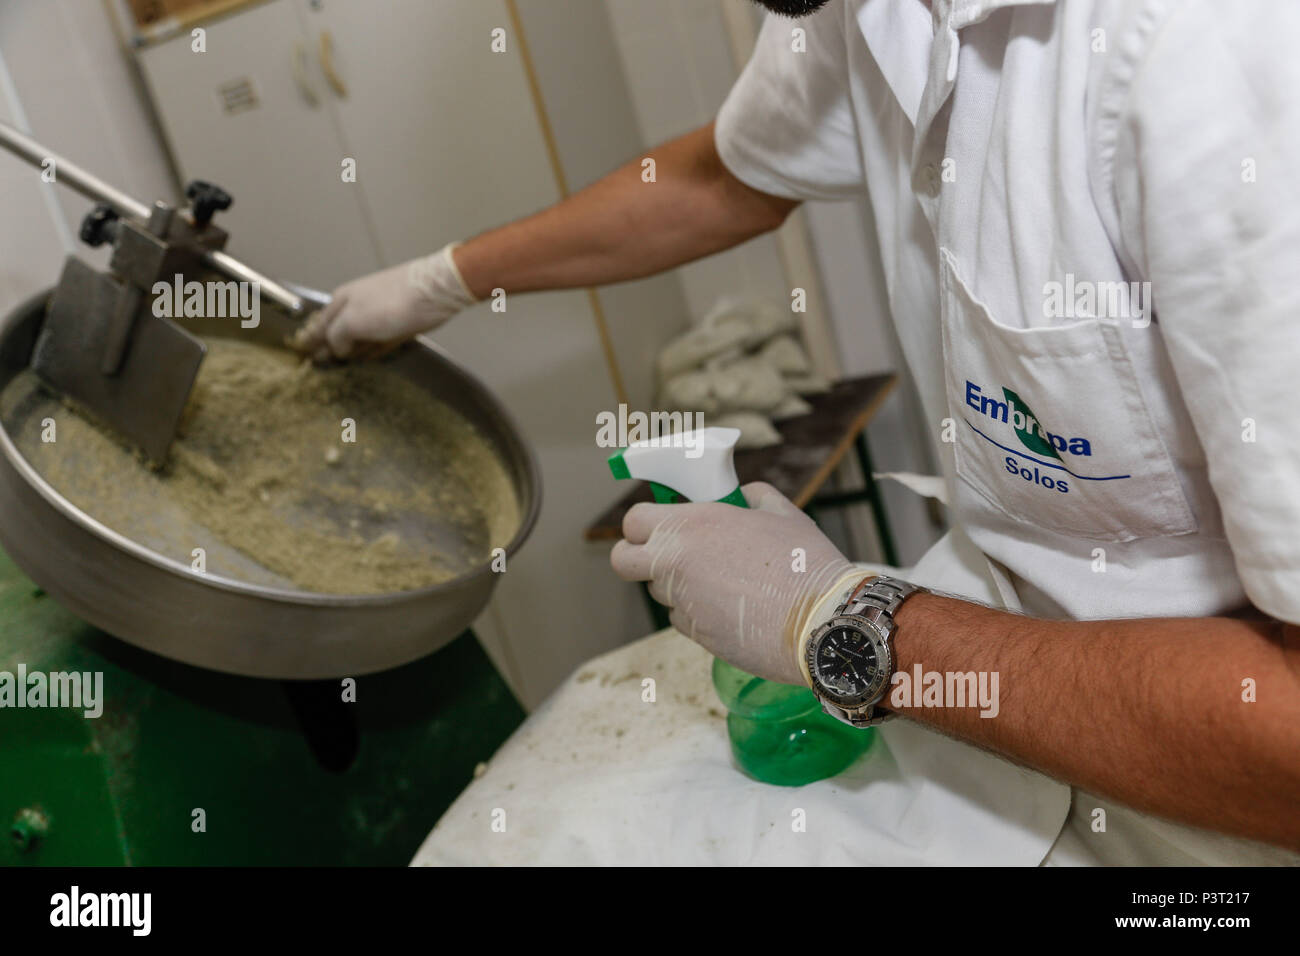 RIO DE JANEIRO, RJ - 27.10.2015: - LABORATÓRIOS EMBRAPA-Pesquisadora da Embrapa colocando fertilizante recém granulado na Estufa para secagem, em laboratório. (Foto: André Horta/Fotoarena) Stockfoto